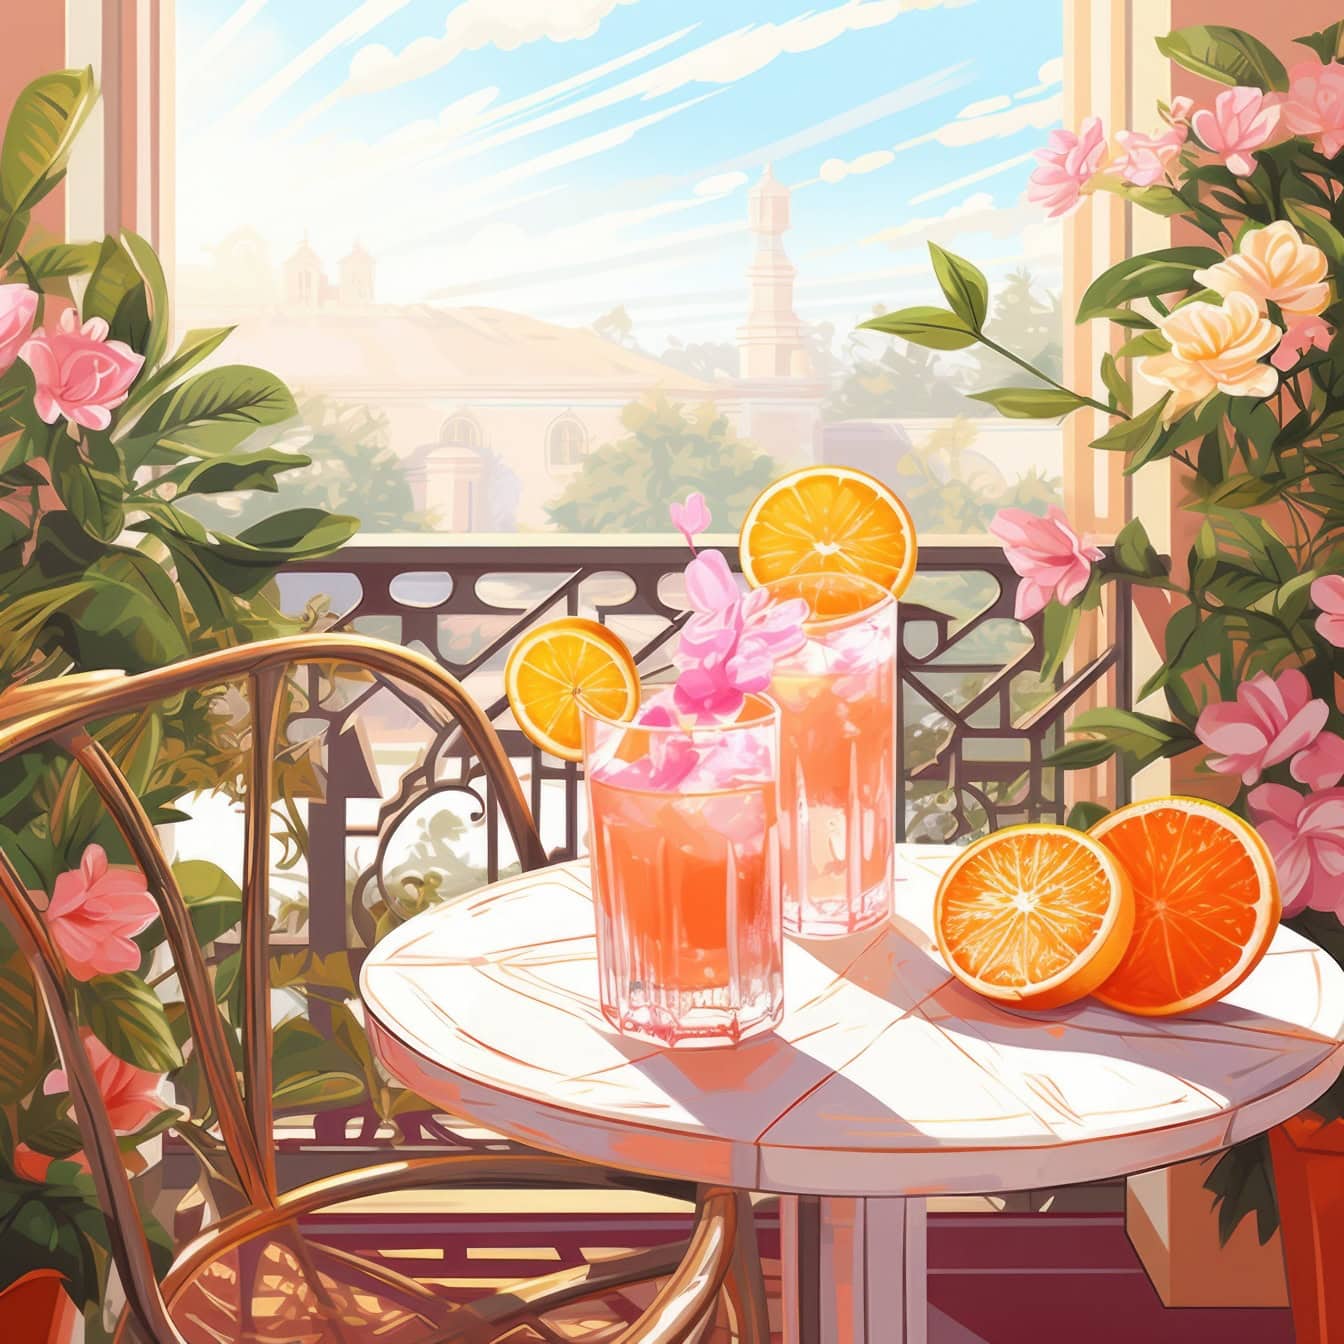 オレンジジュース、オレンジ、花が乗ったテーブルのグラフィックイラスト